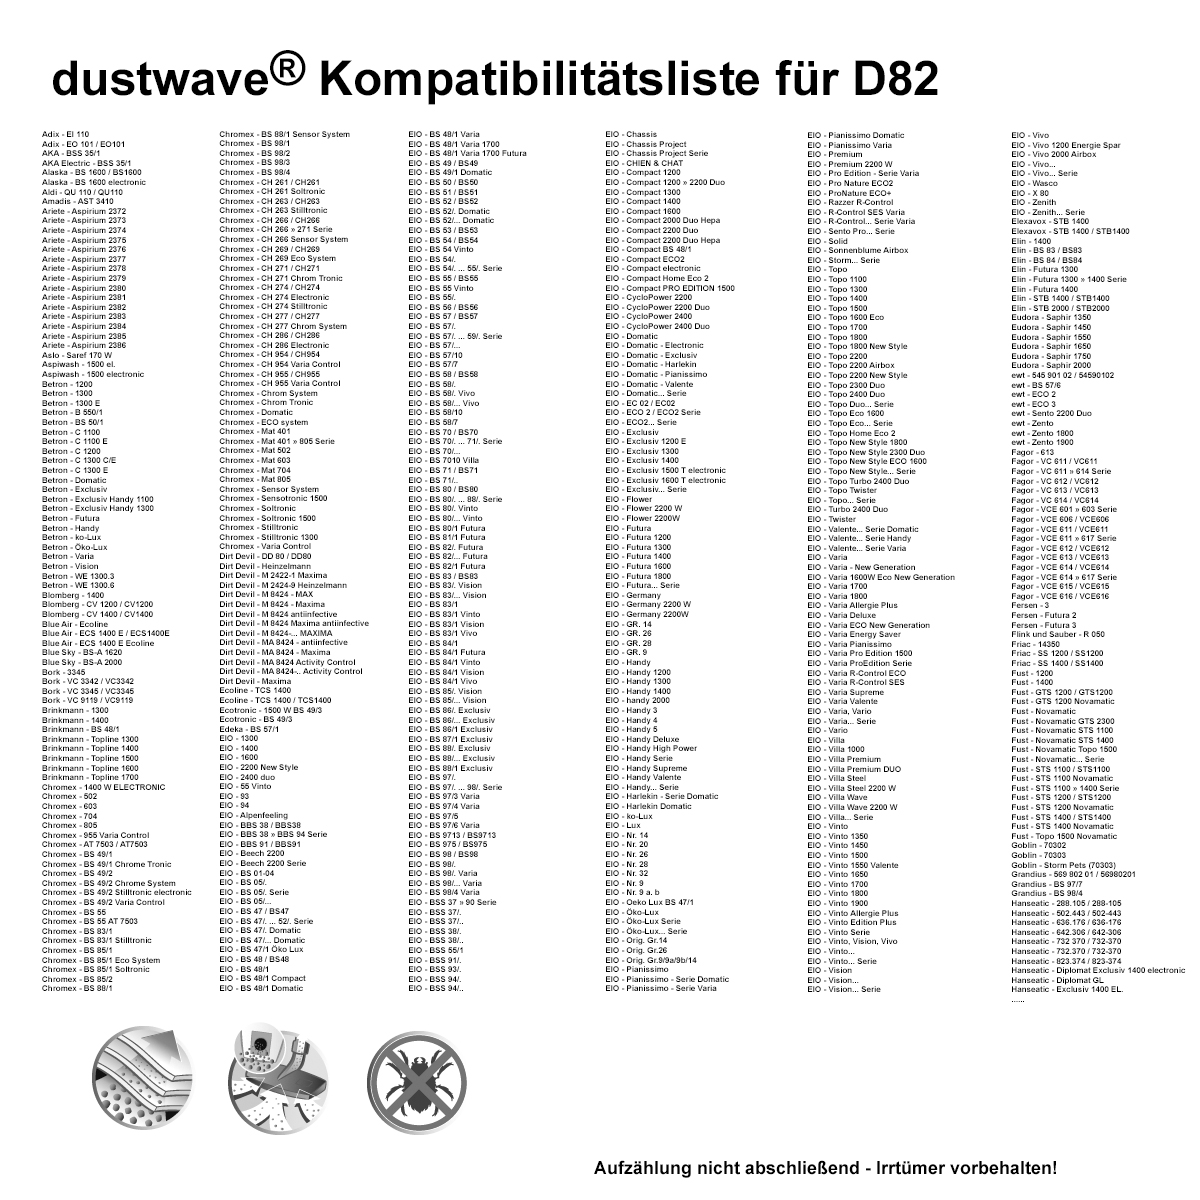 Dustwave® 1 Staubsaugerbeutel für AquaPur EO 800 - hocheffizient, mehrlagiges Mikrovlies mit Hygieneverschluss - Made in Germany